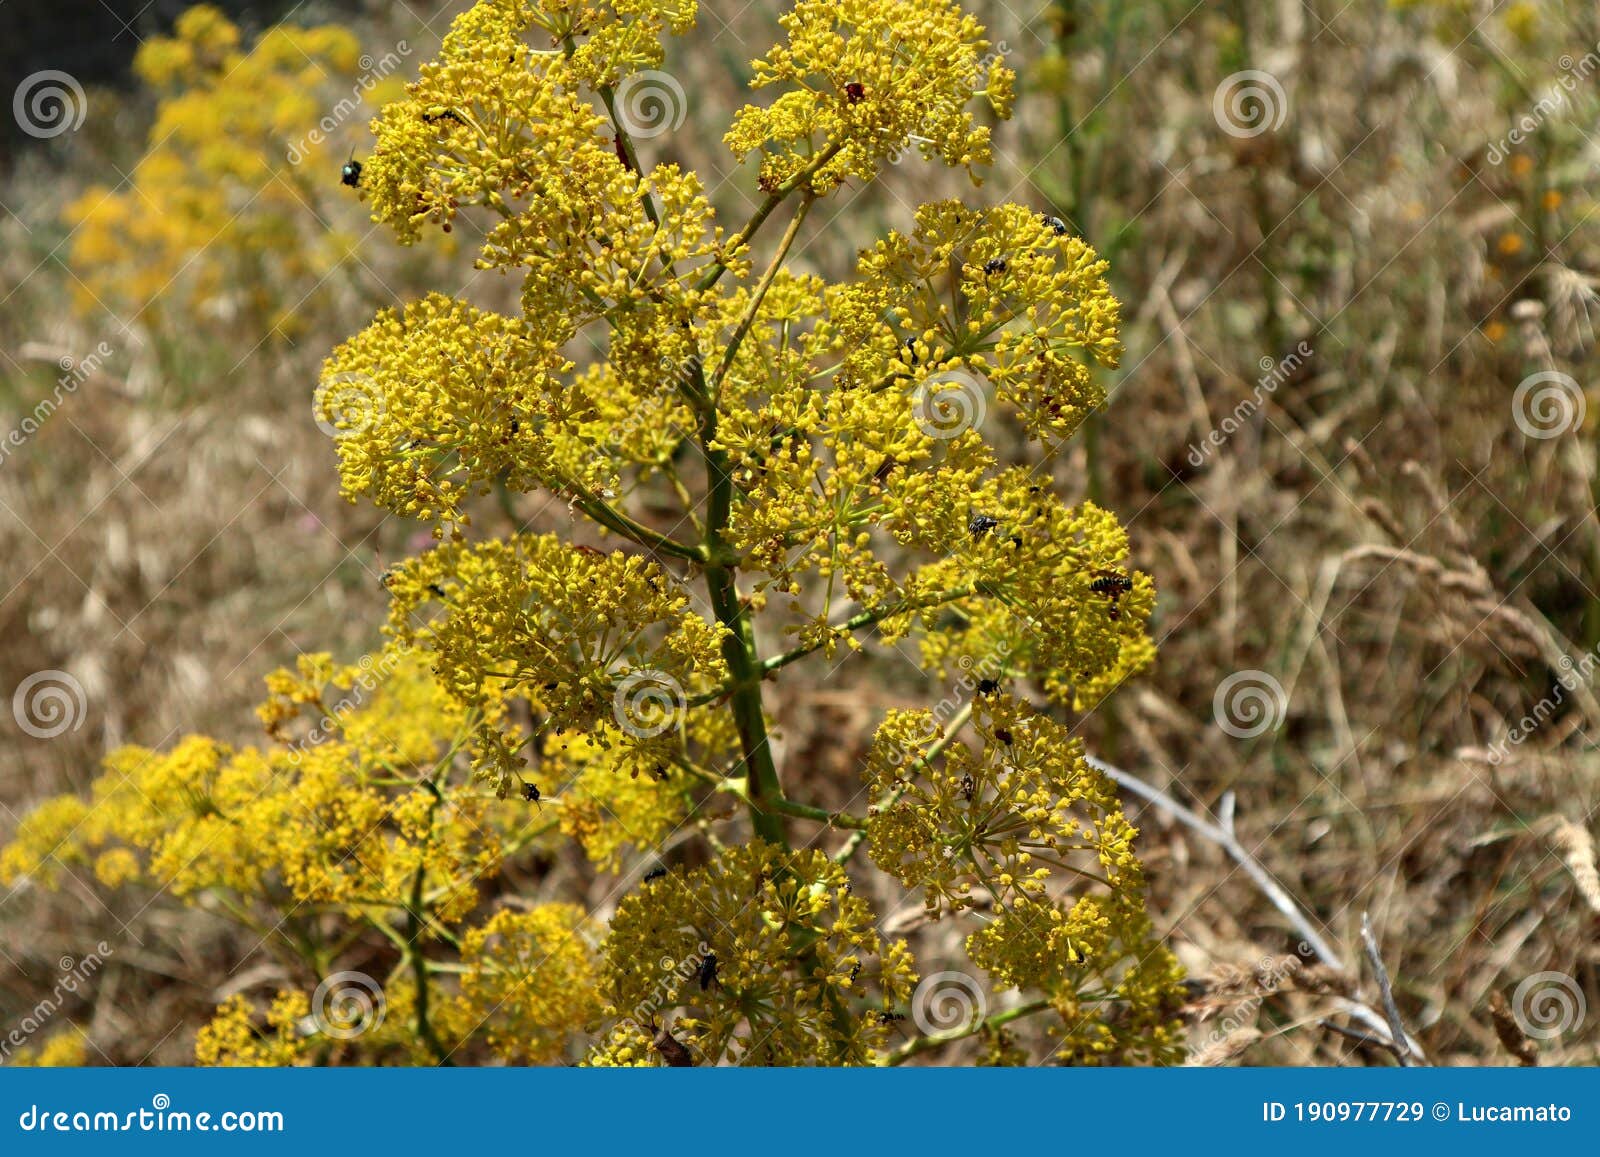 insetti su arbusto di fiori gialli